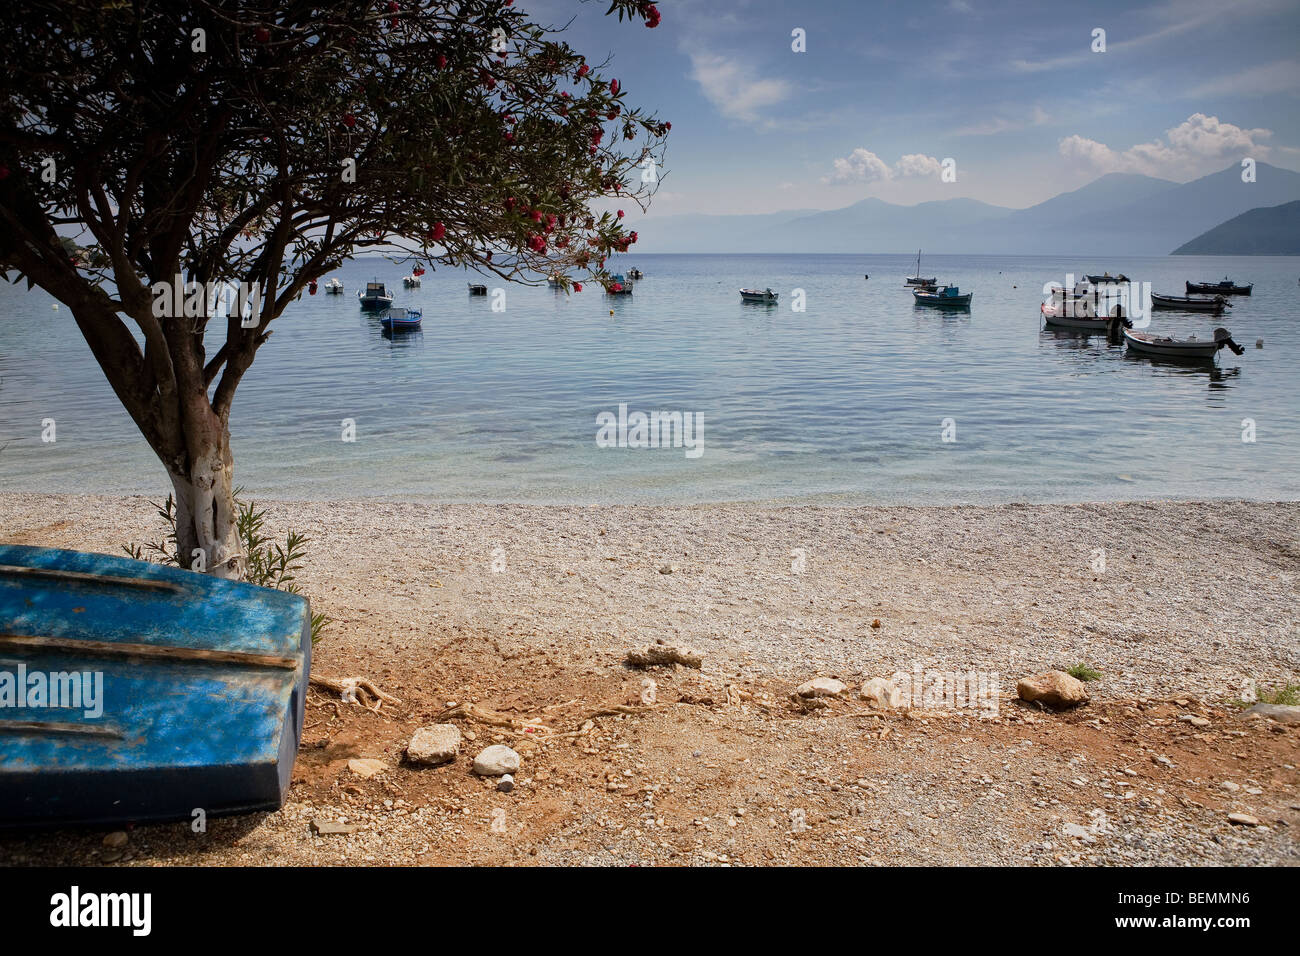 kleine Fischerboote in der Bucht von Psili Ammos, Samos - Griechenland Stockfoto